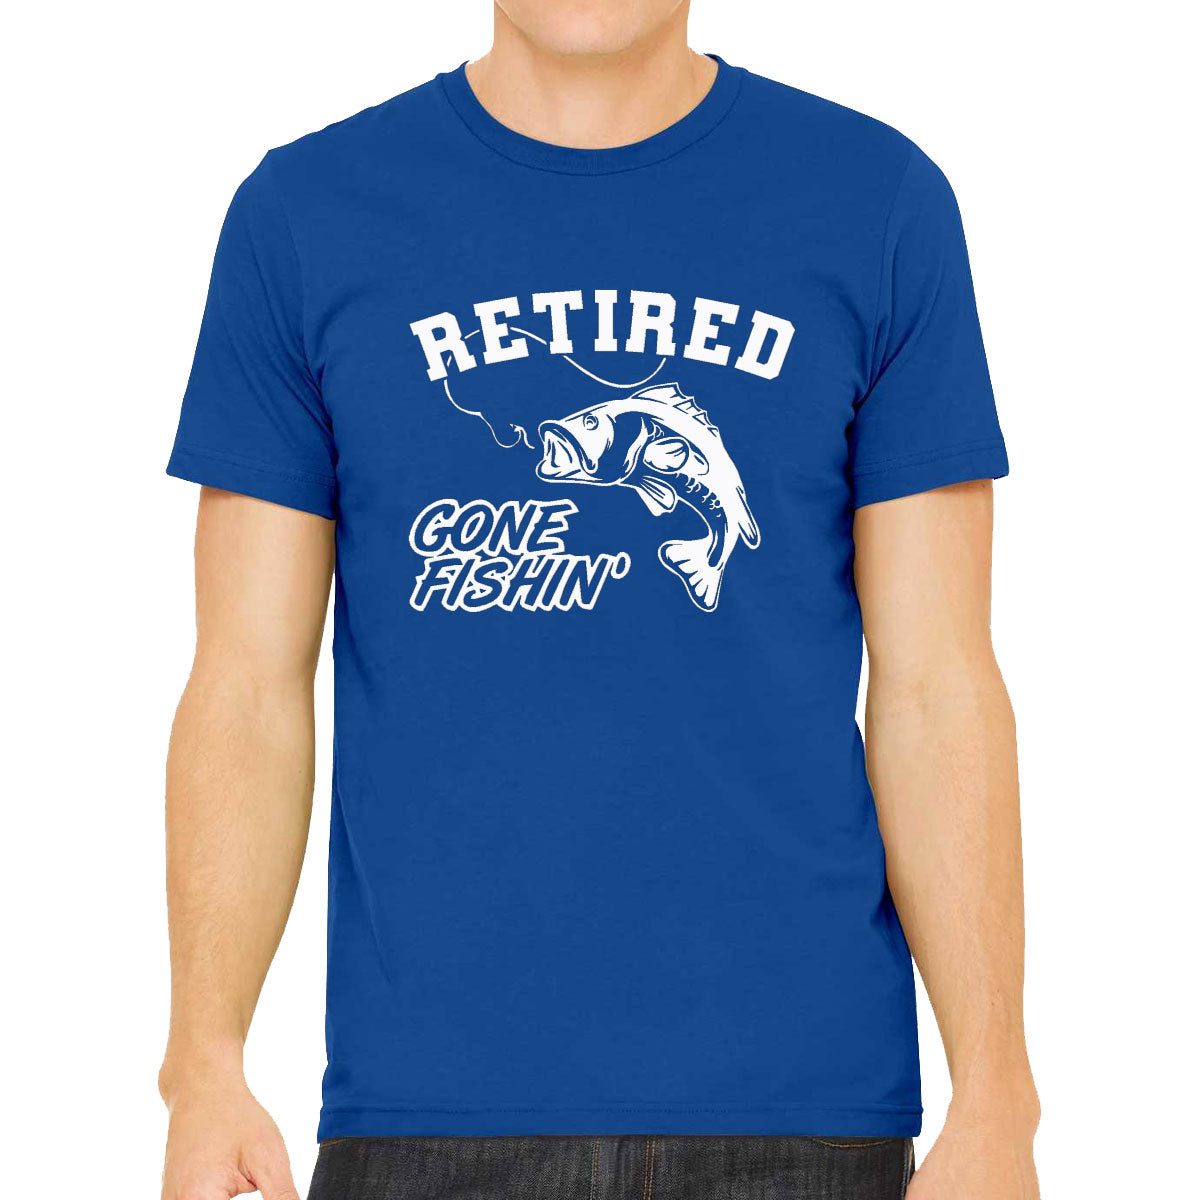 Retired, Gone Fishing Men's T-shirt